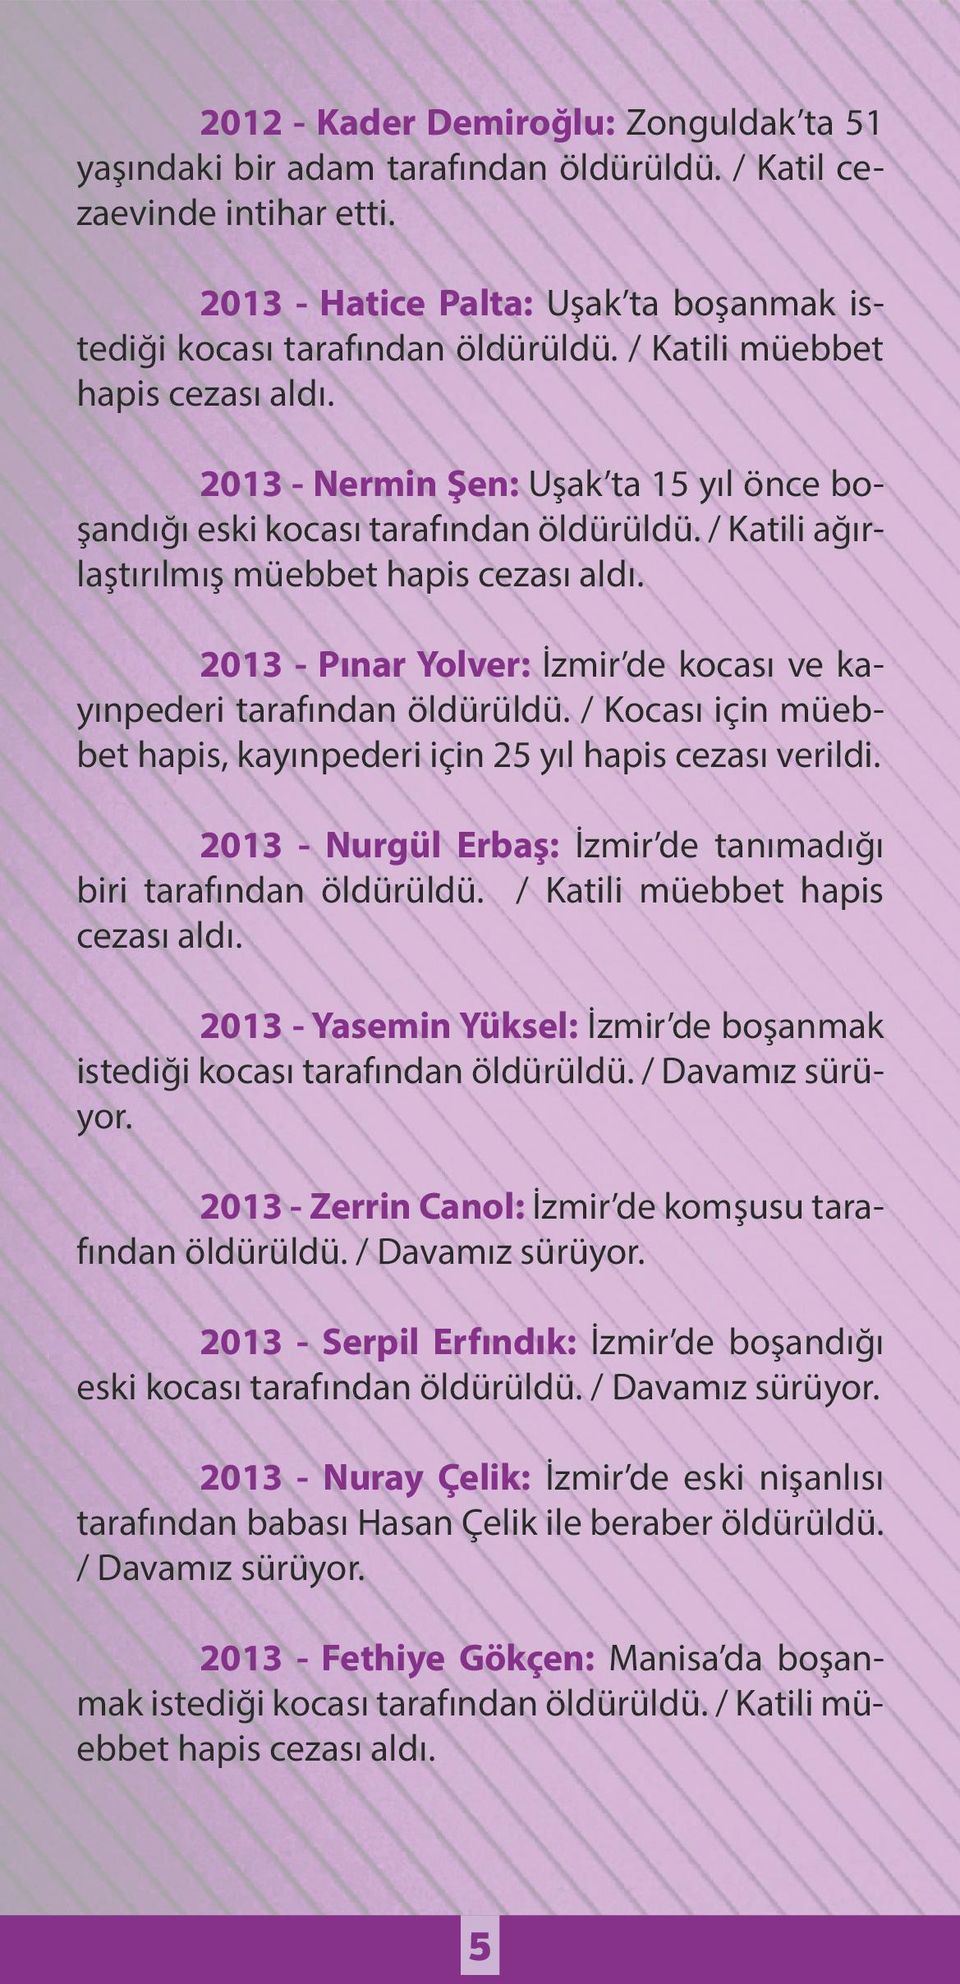 / Kocası için müebbet hapis, kayınpederi için 25 yıl hapis cezası verildi. 2013 - Nurgül Erbaş: İzmir de tanımadığı biri tarafından öldürüldü. / Katili müebbet hapis cezası aldı.